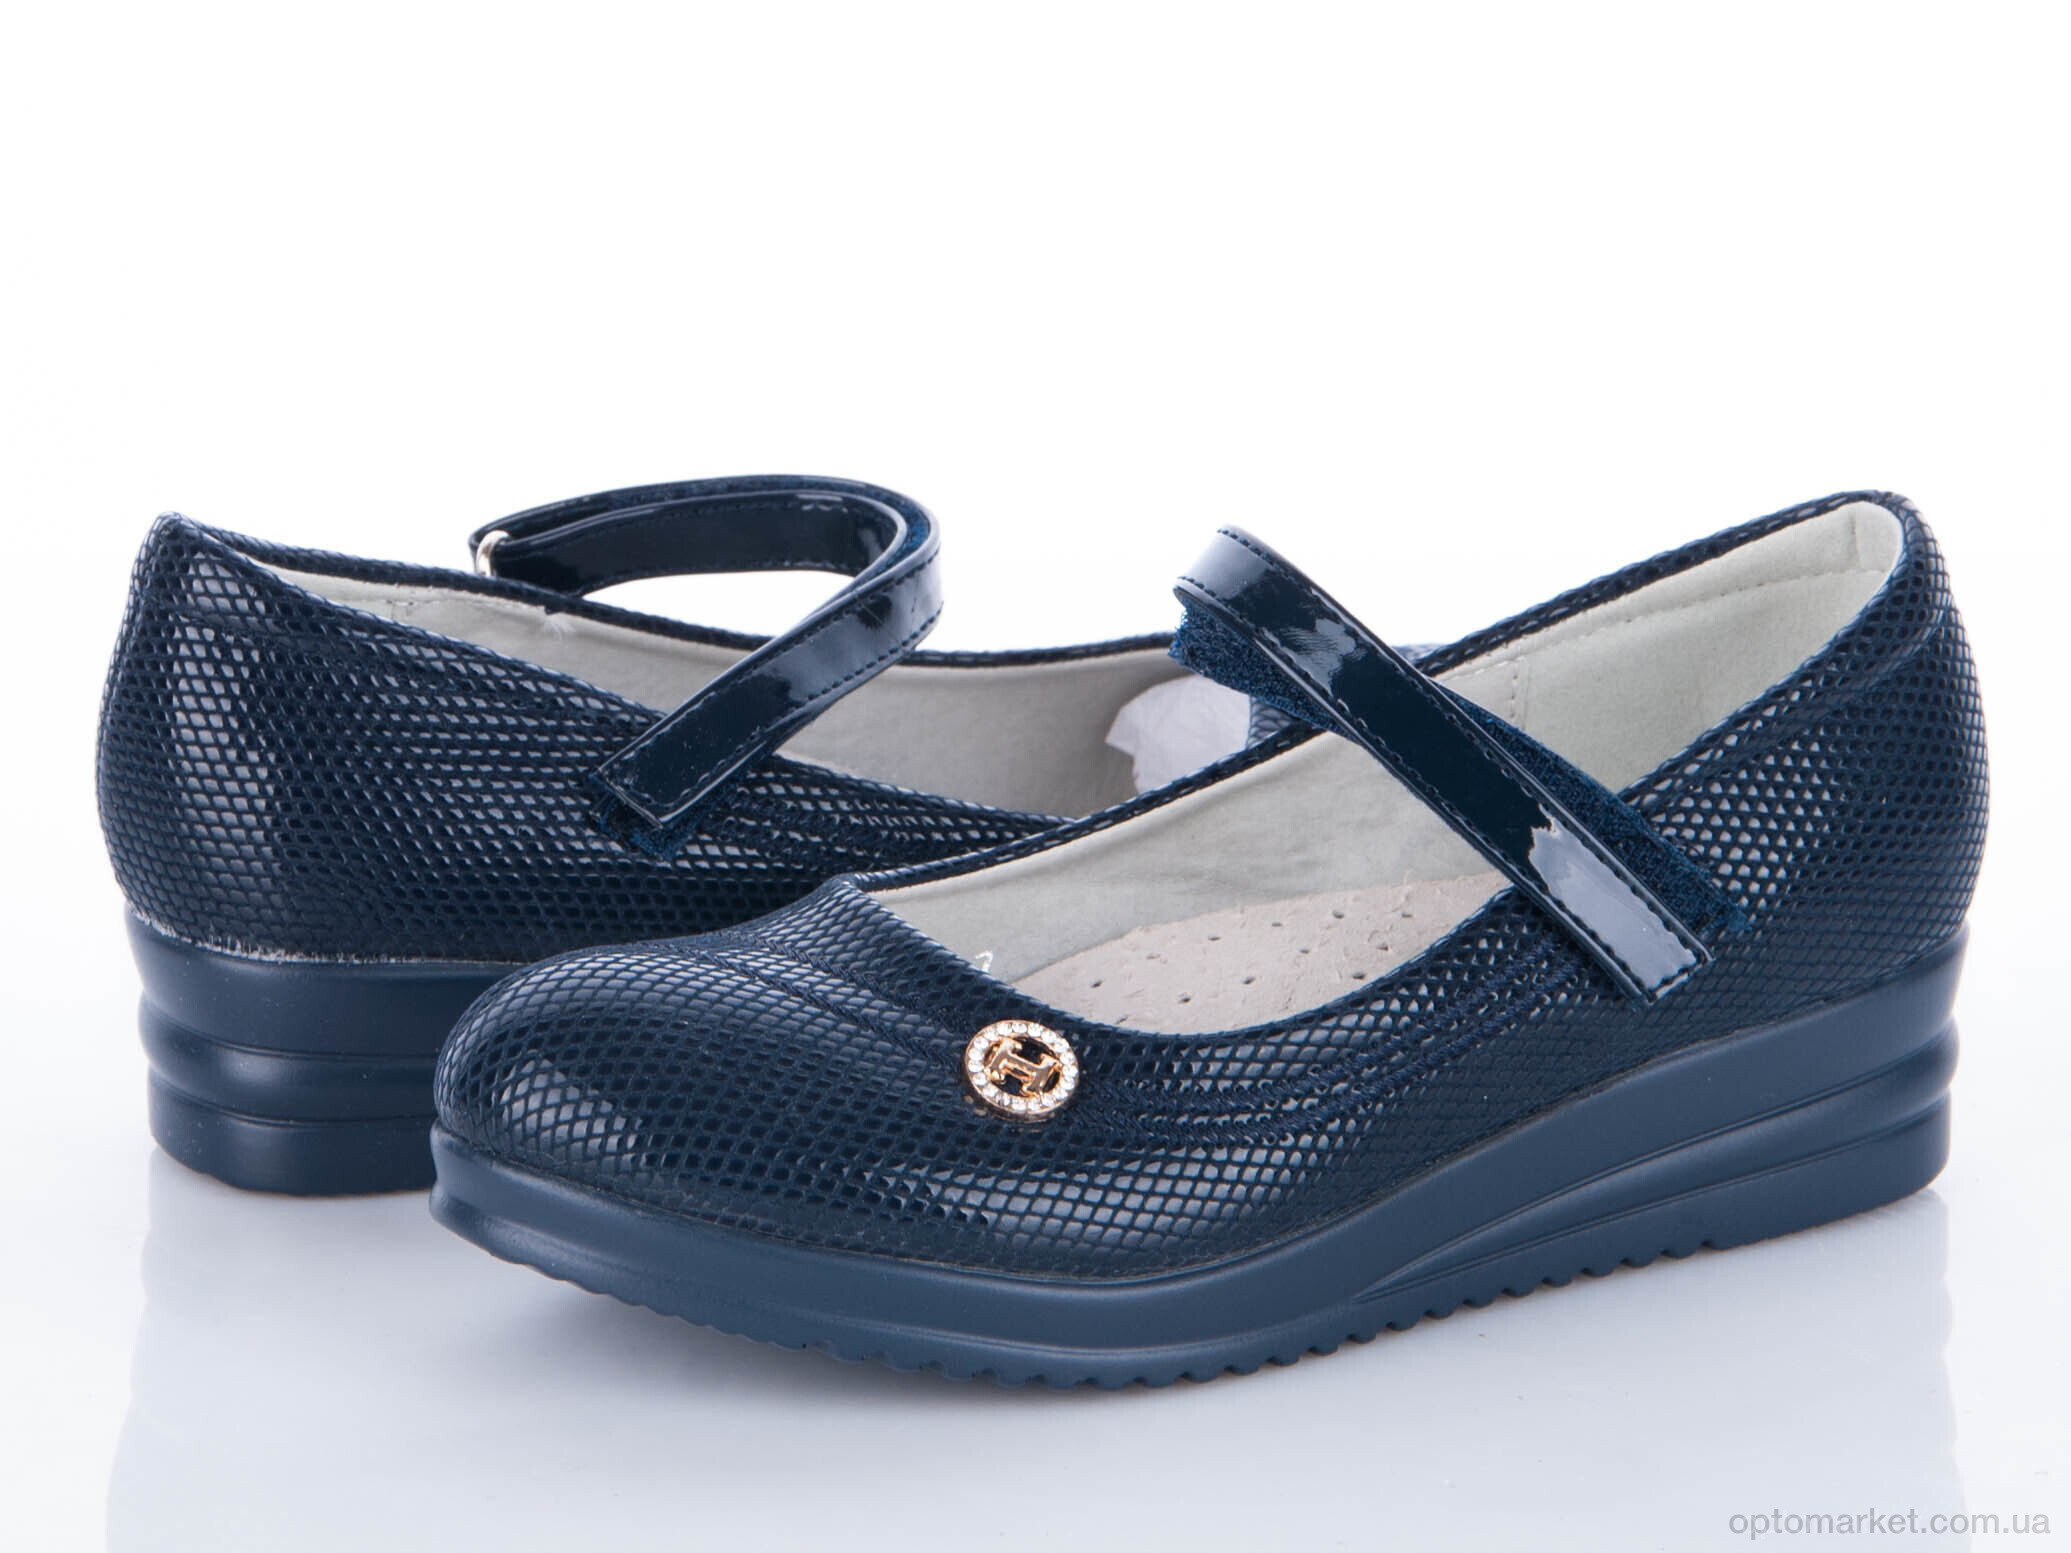 Купить Туфлі дитячі S-07 blue Waldem, фото 1